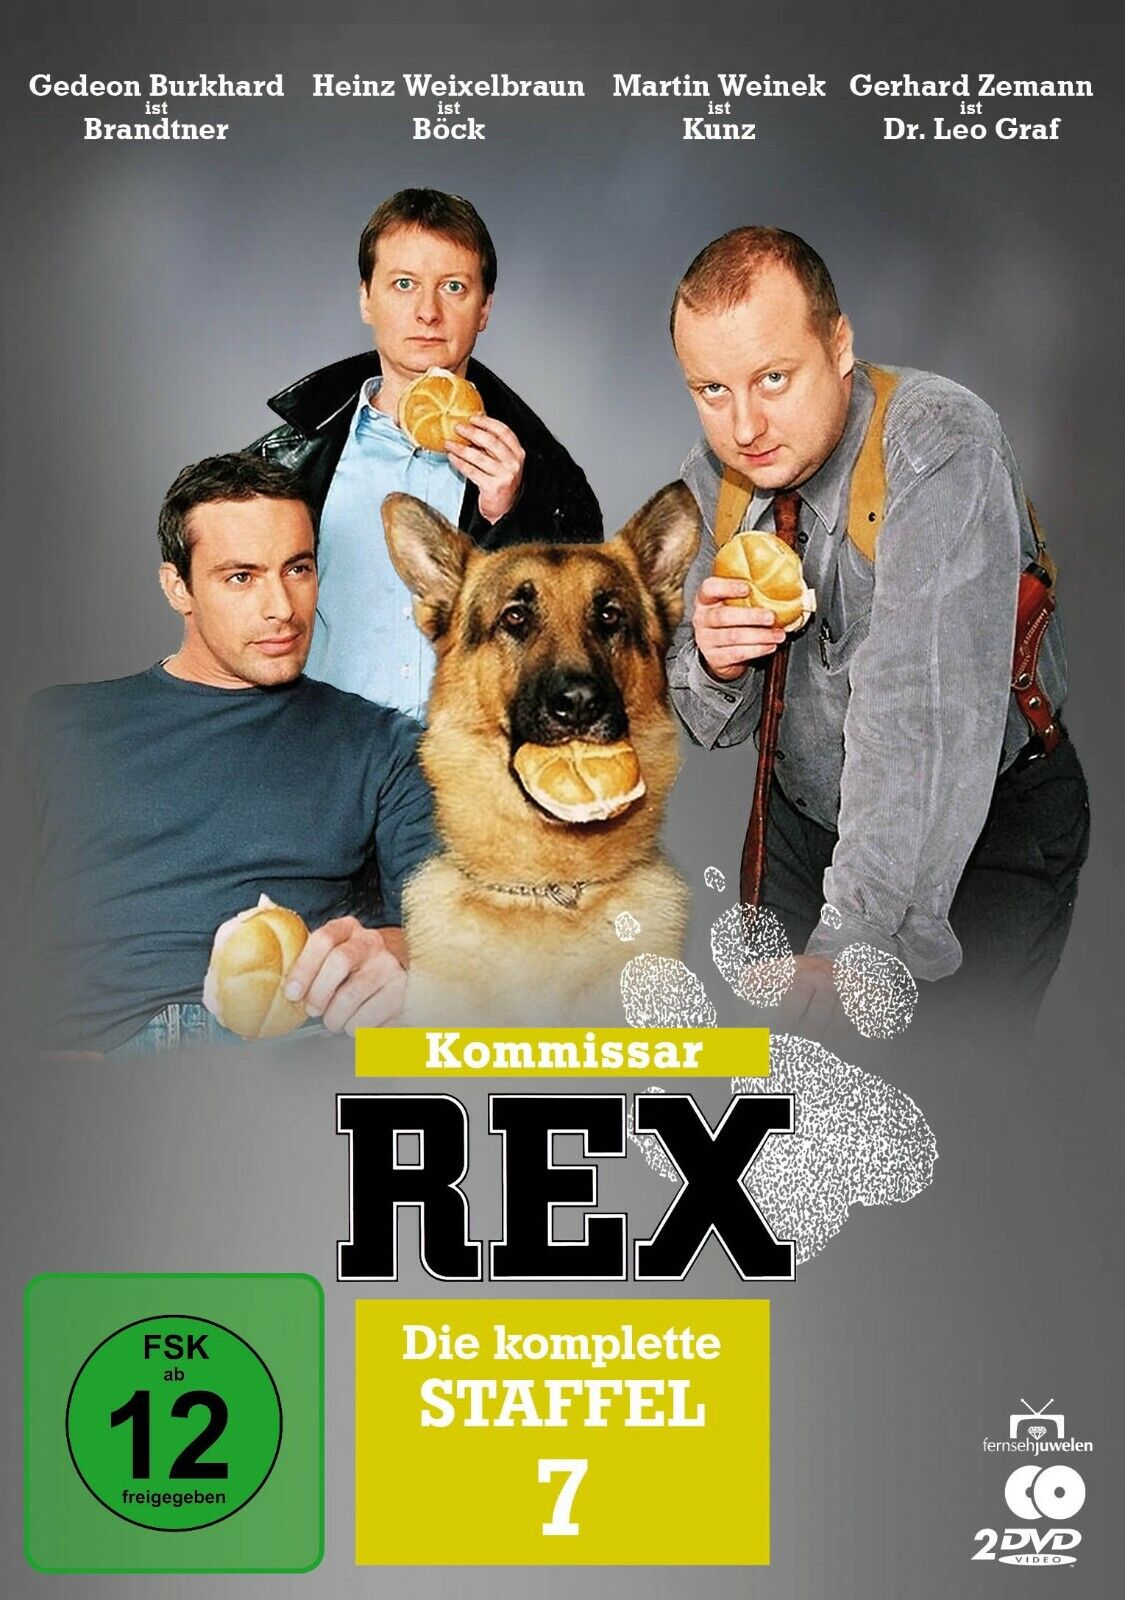 Image of Kommissar Rex   Staffel 7   mit Gedeon Burkhard   Fernsehjuwelen  2 DVDs 